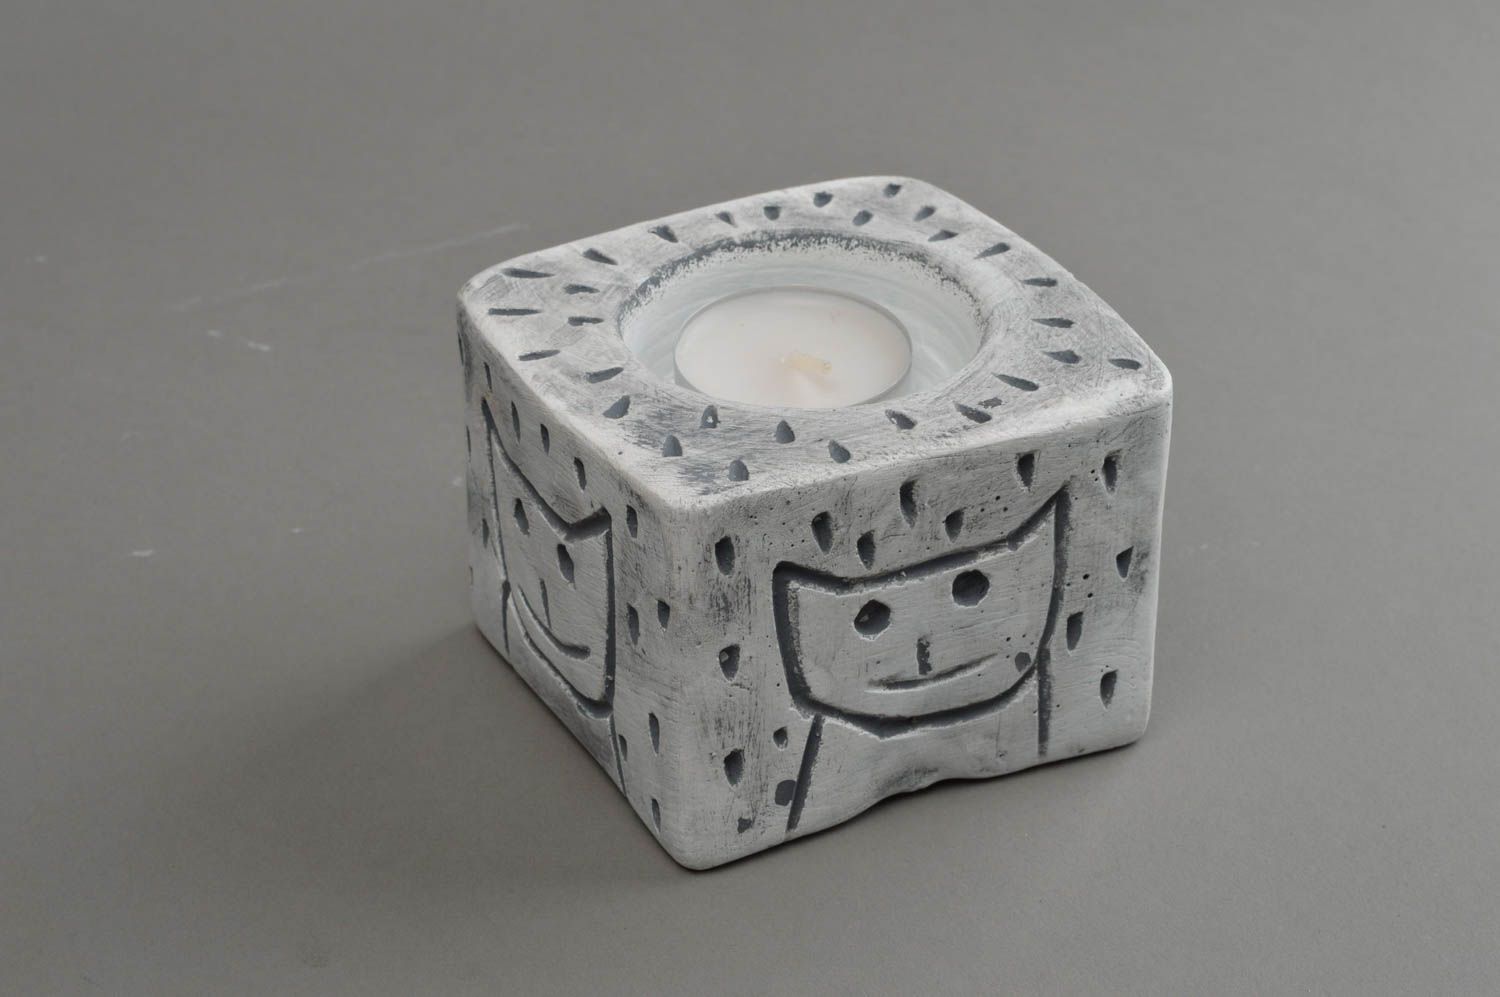 Гипсовый подсвечник квадратный на одну свечу-таблетку расписной хэнд мэйд фото 3